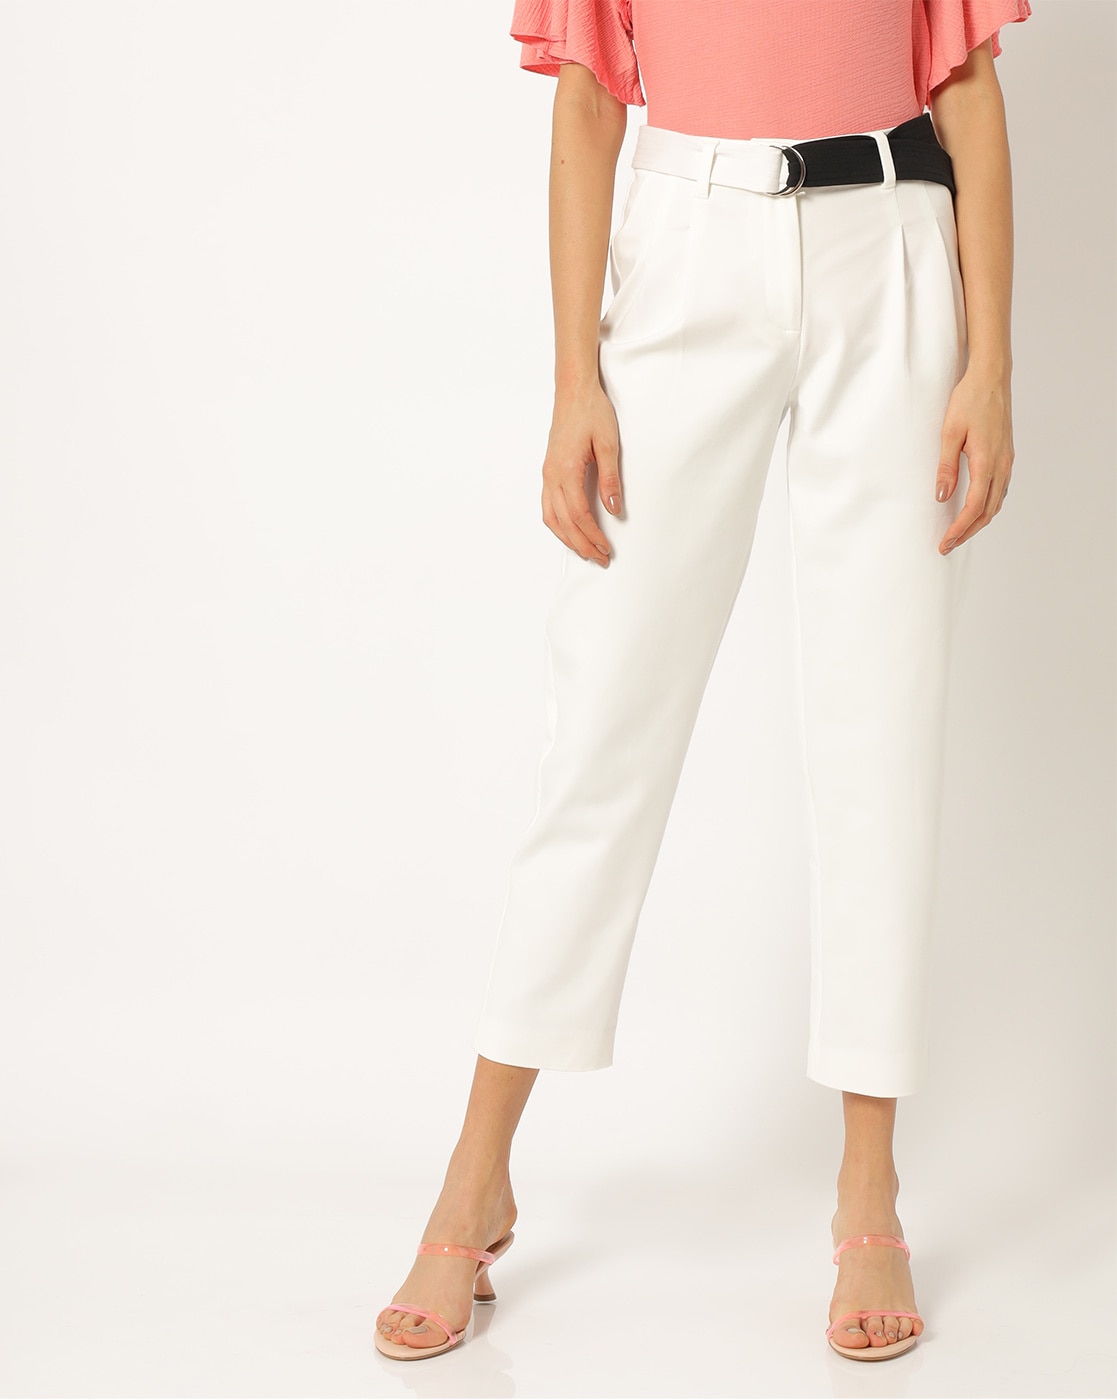 Buy Vero Moda White Printed Pants for Women Online  Tata CLiQ